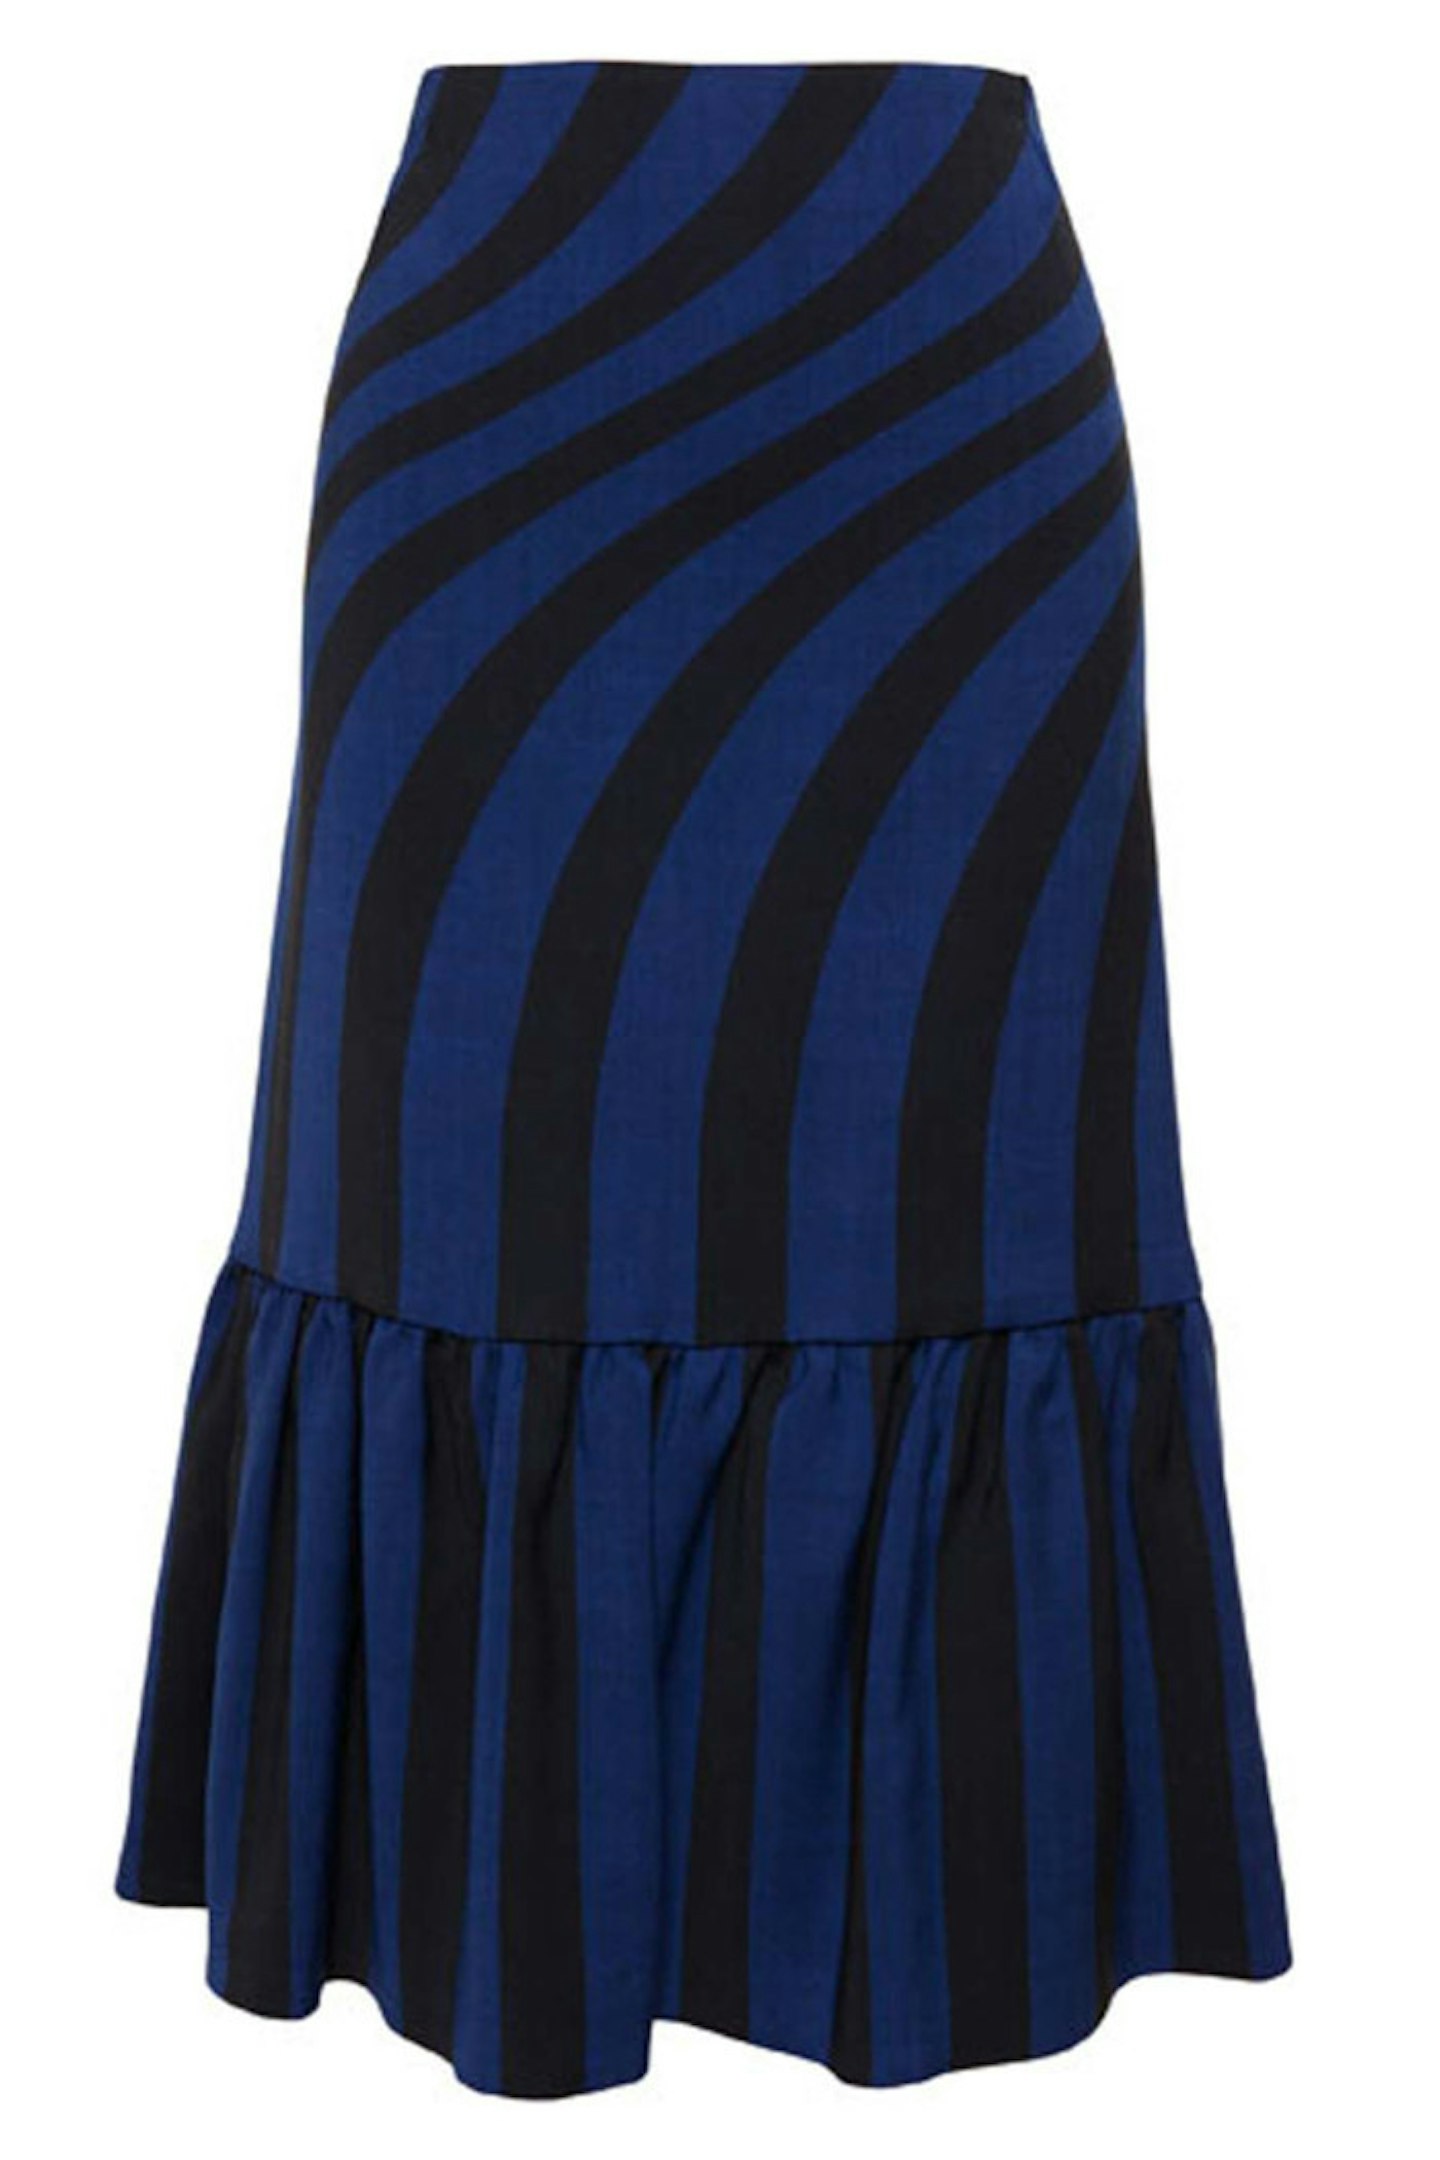 Swirl Skirt With Ruffle Hem, £525, Dries Van Noten at Browns